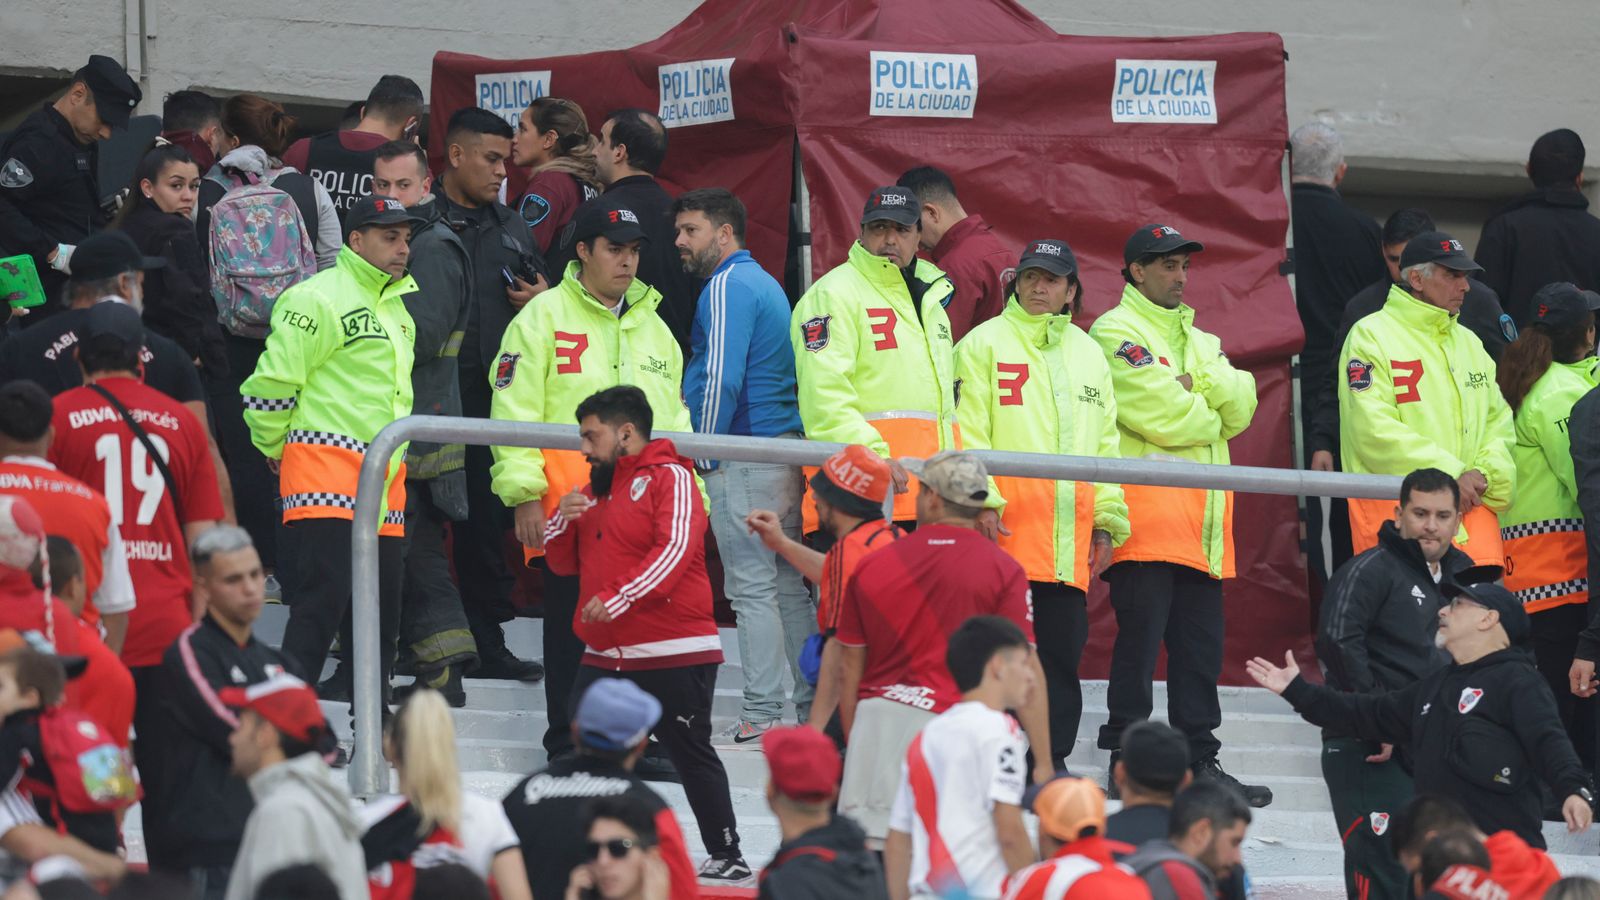 Argentine: Le match de football de River Plate suspendu après la mort d’un fan dans une chute de 15 mètres du stade |  Nouvelles du monde